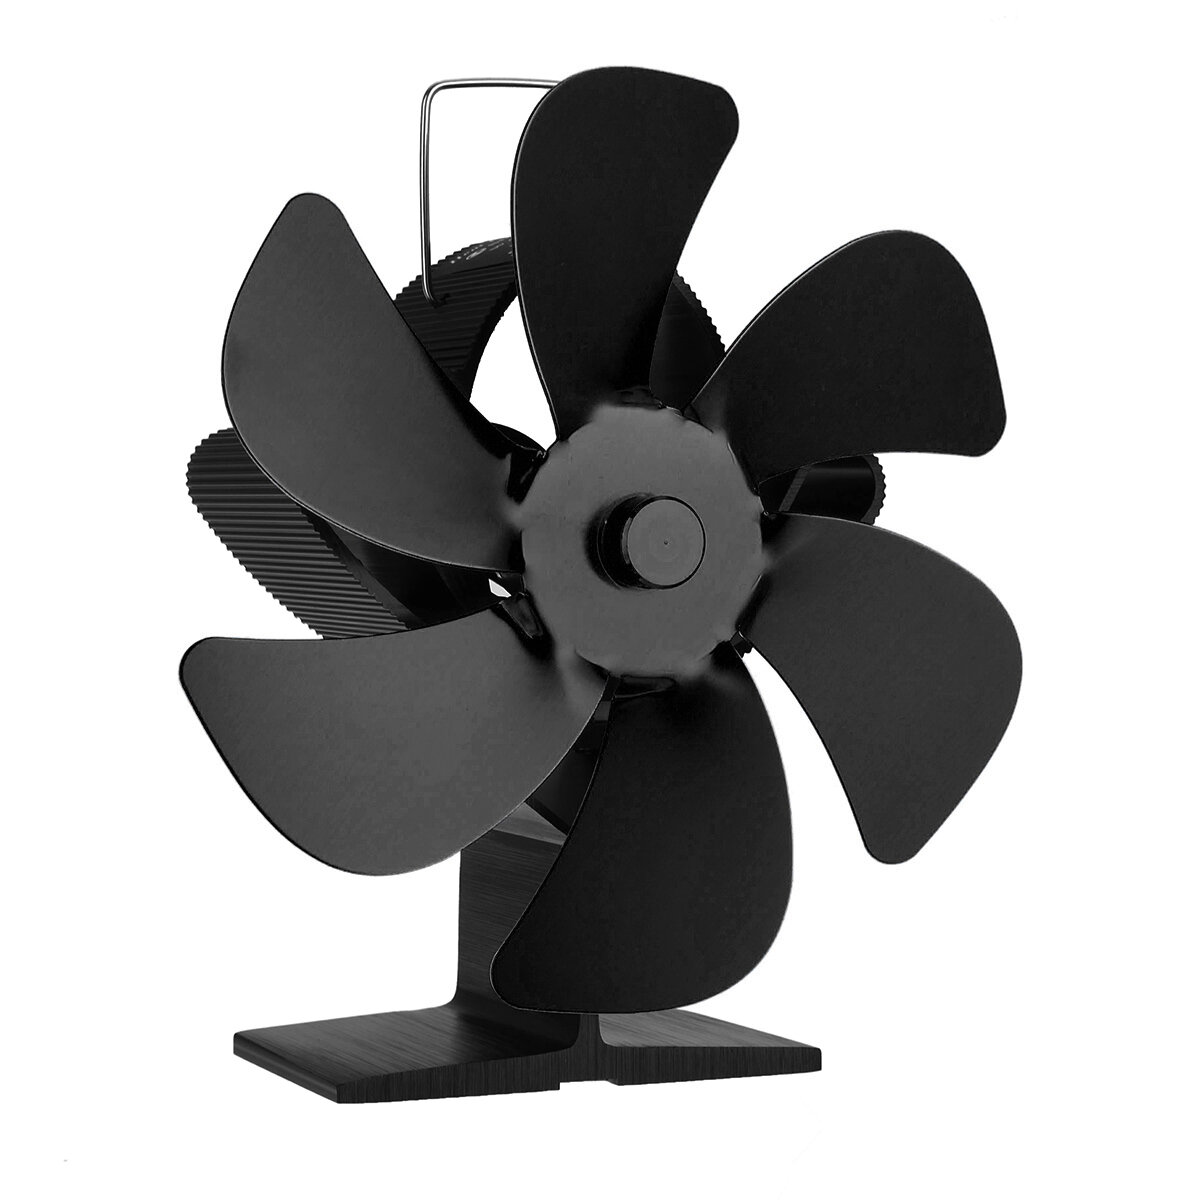 

AUGIENB 6 Лопасти Вентилятор для дровяной печи Тепло Автономный вентилятор для камина Eco Нагреватель Бесшумный